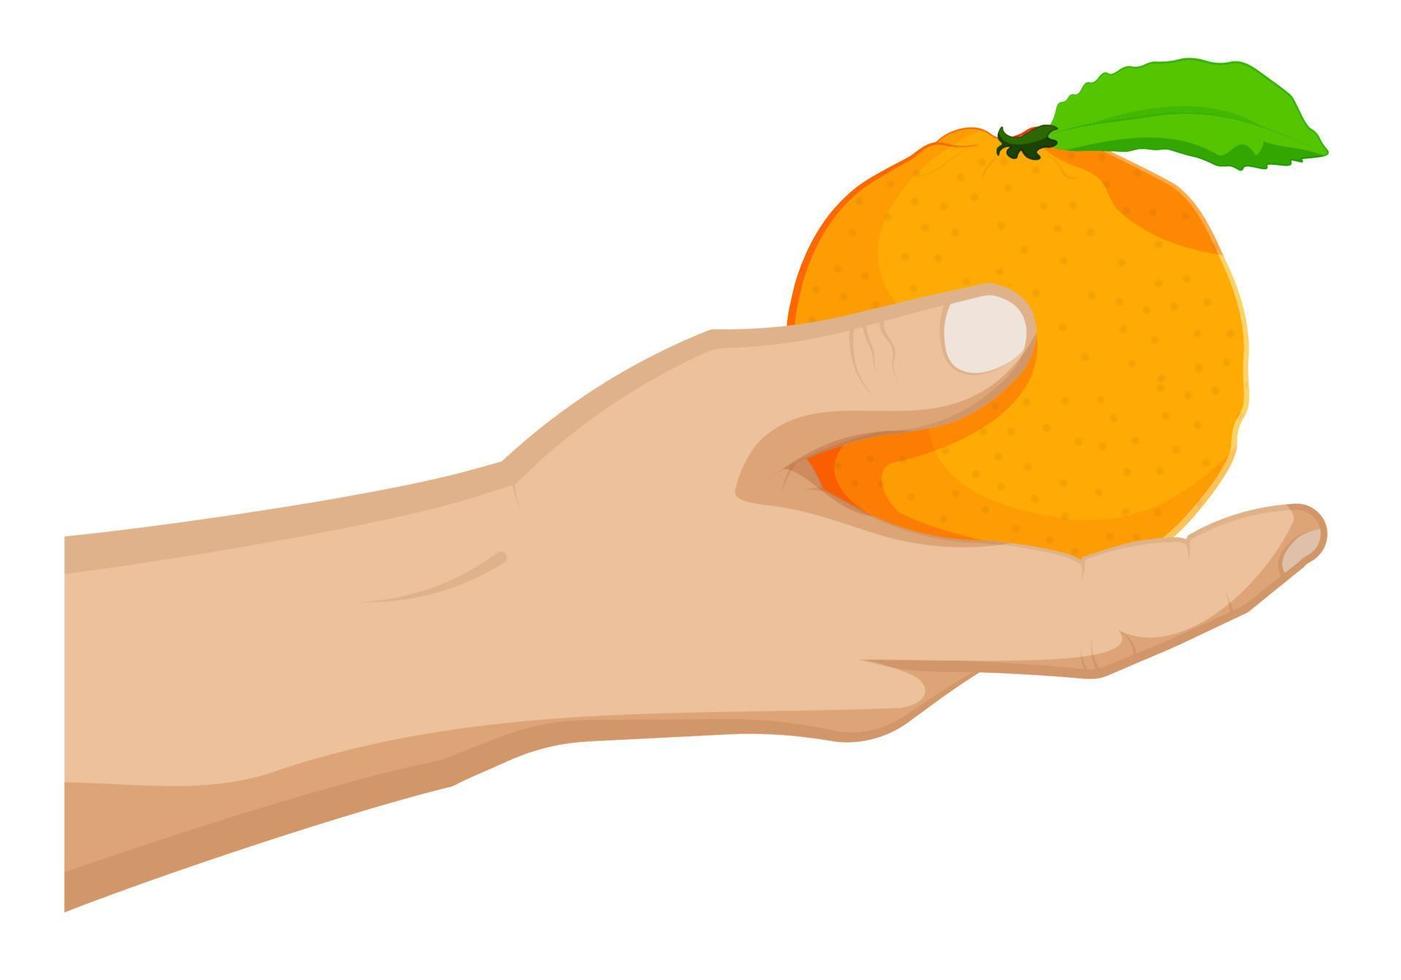 orange mûre juteuse avec feuille verte dans la main d'un homme. fruits tropicaux d'été. vecteur de dessin animé sur fond blanc